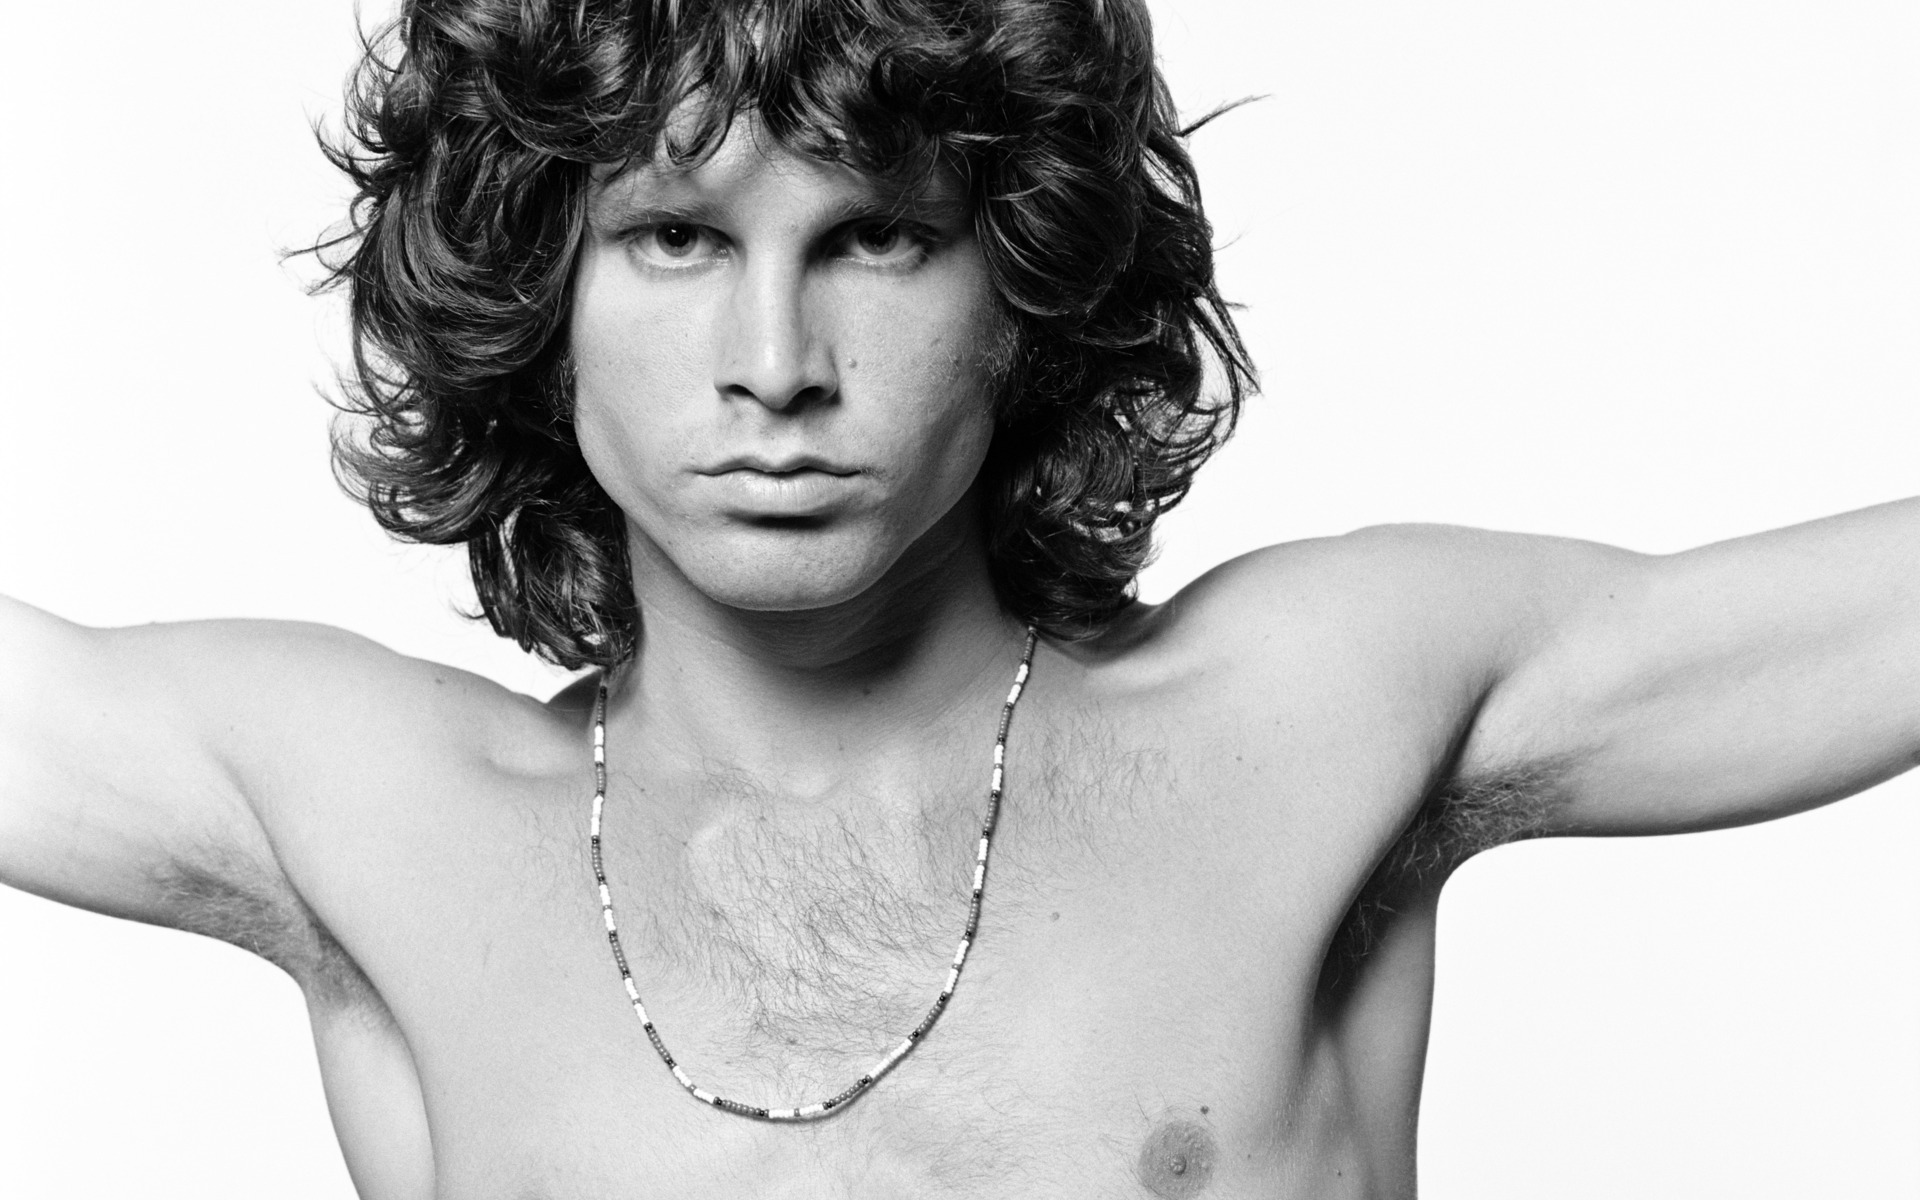 ¿No habrá sido una confusión nada más de Jim Morrison?